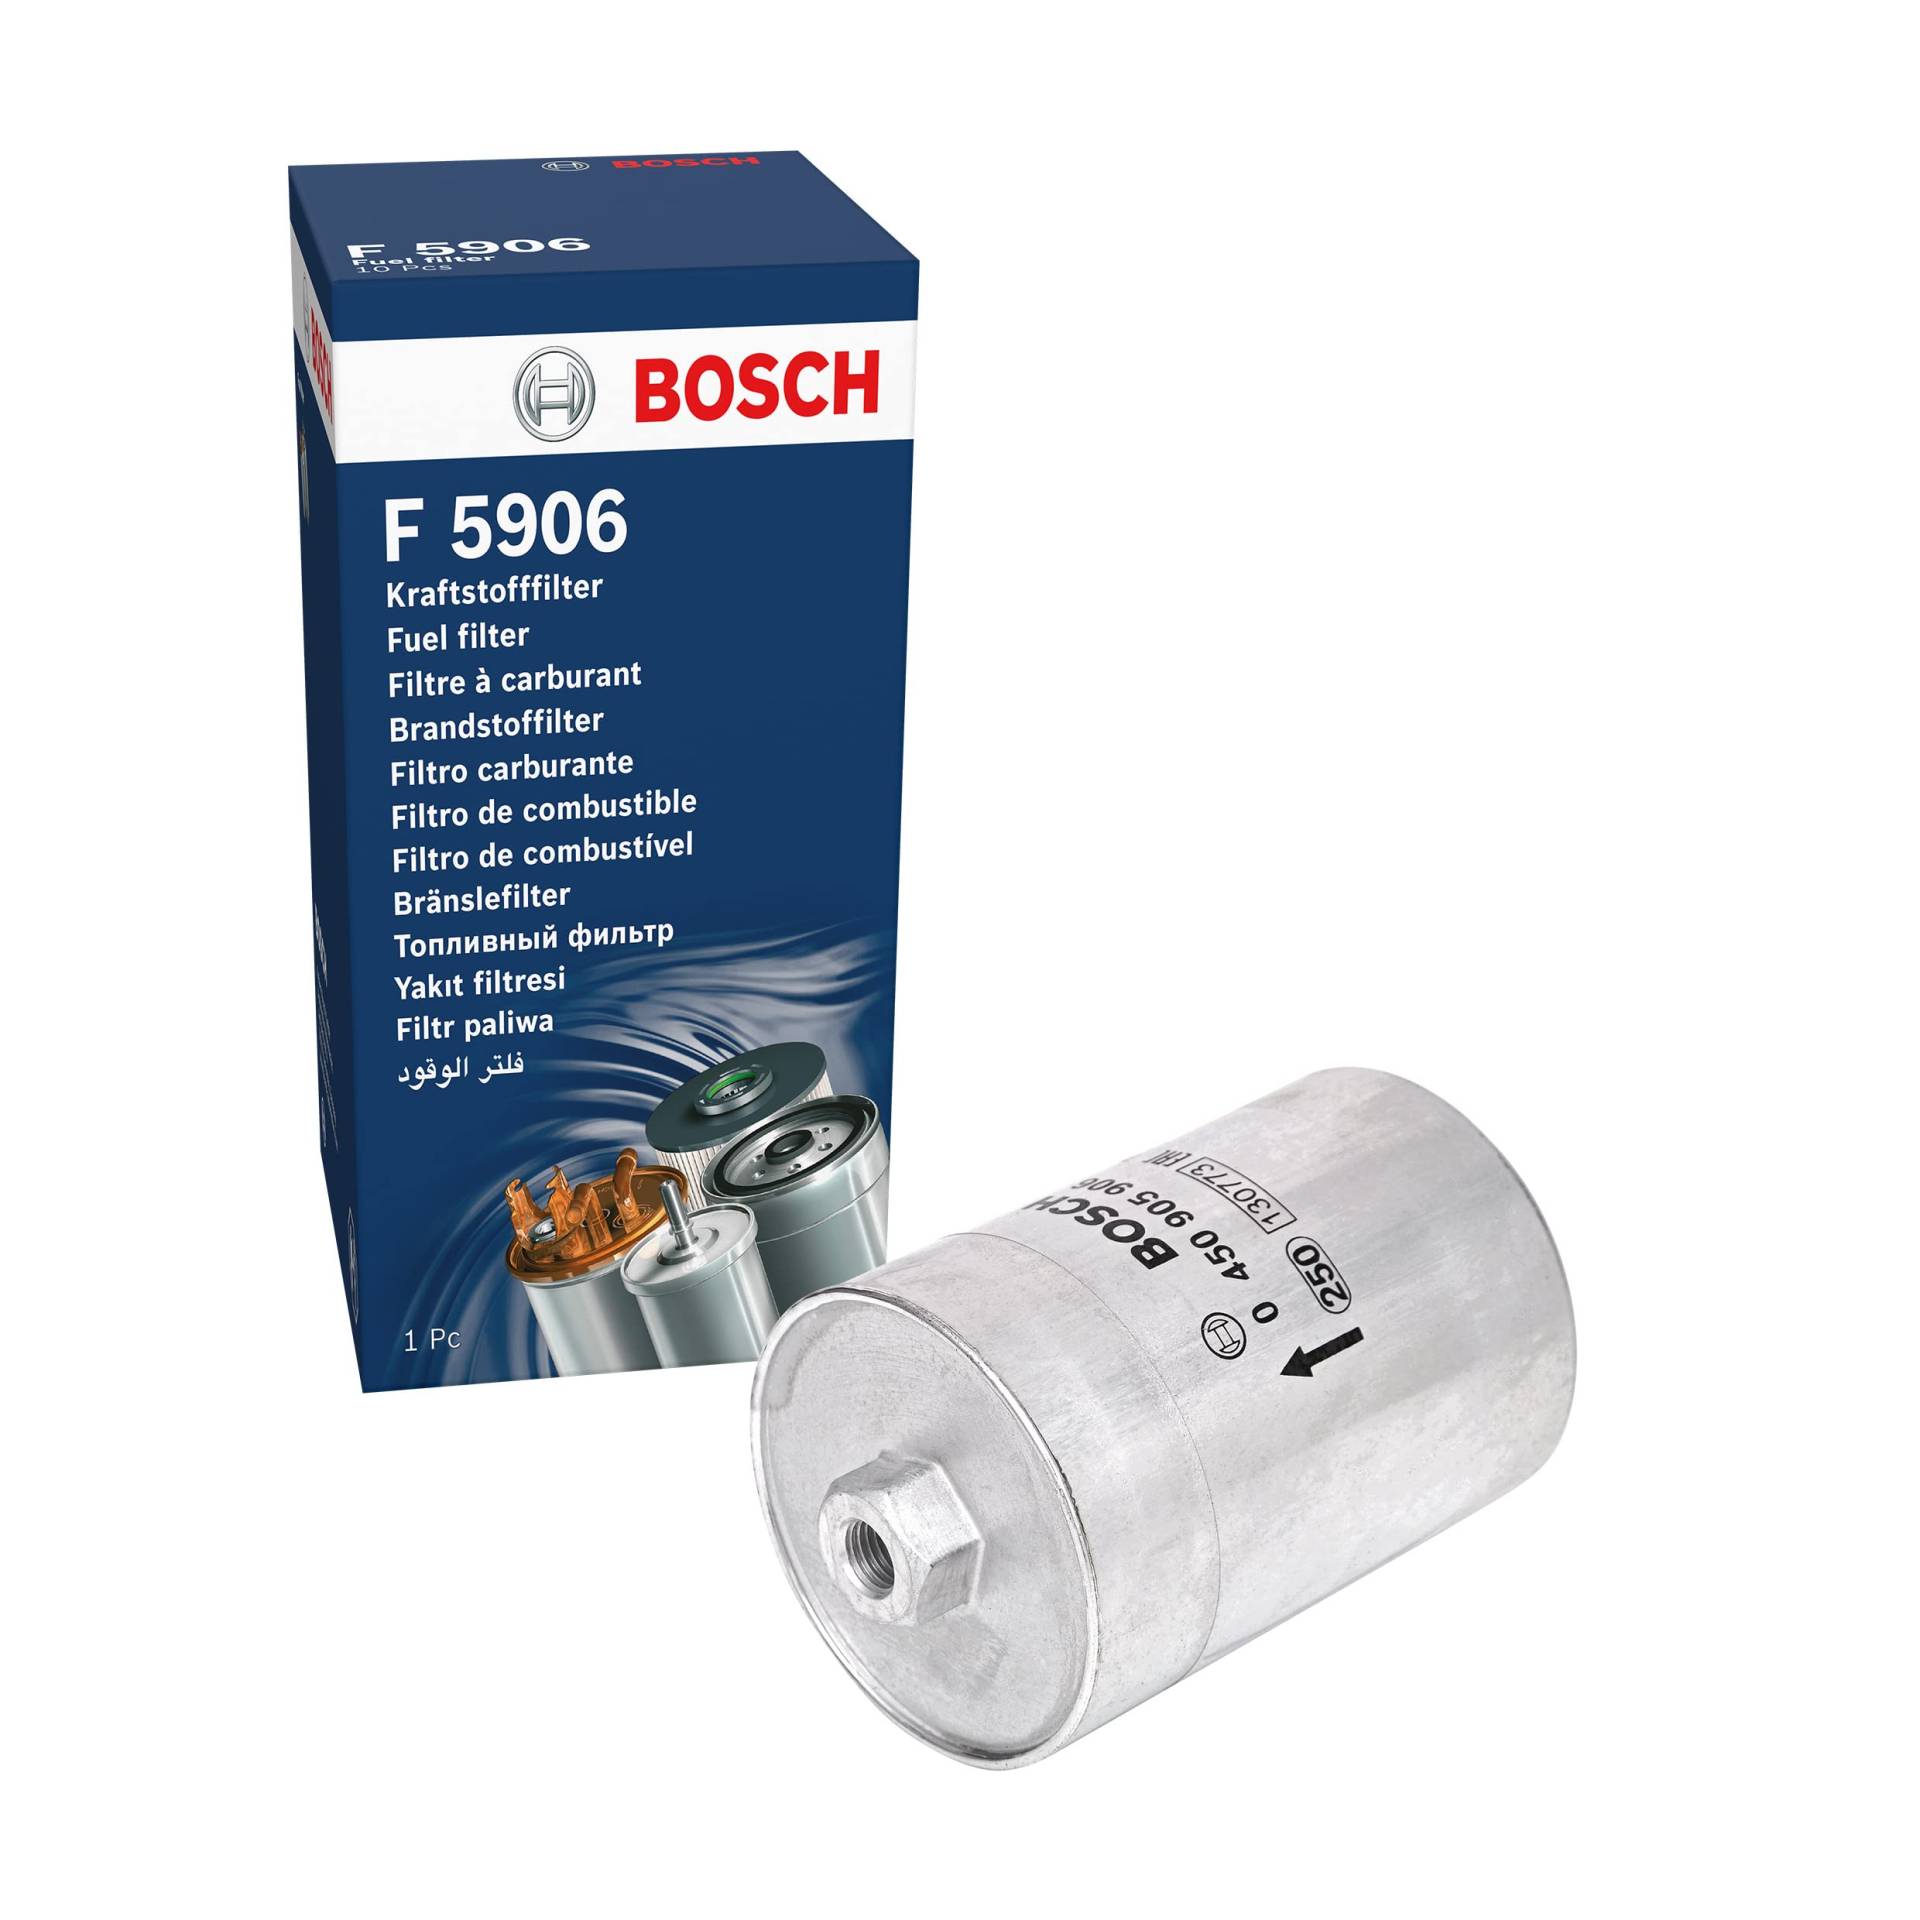 Bosch F5906 - Benzinfilter Auto von Bosch Automotive